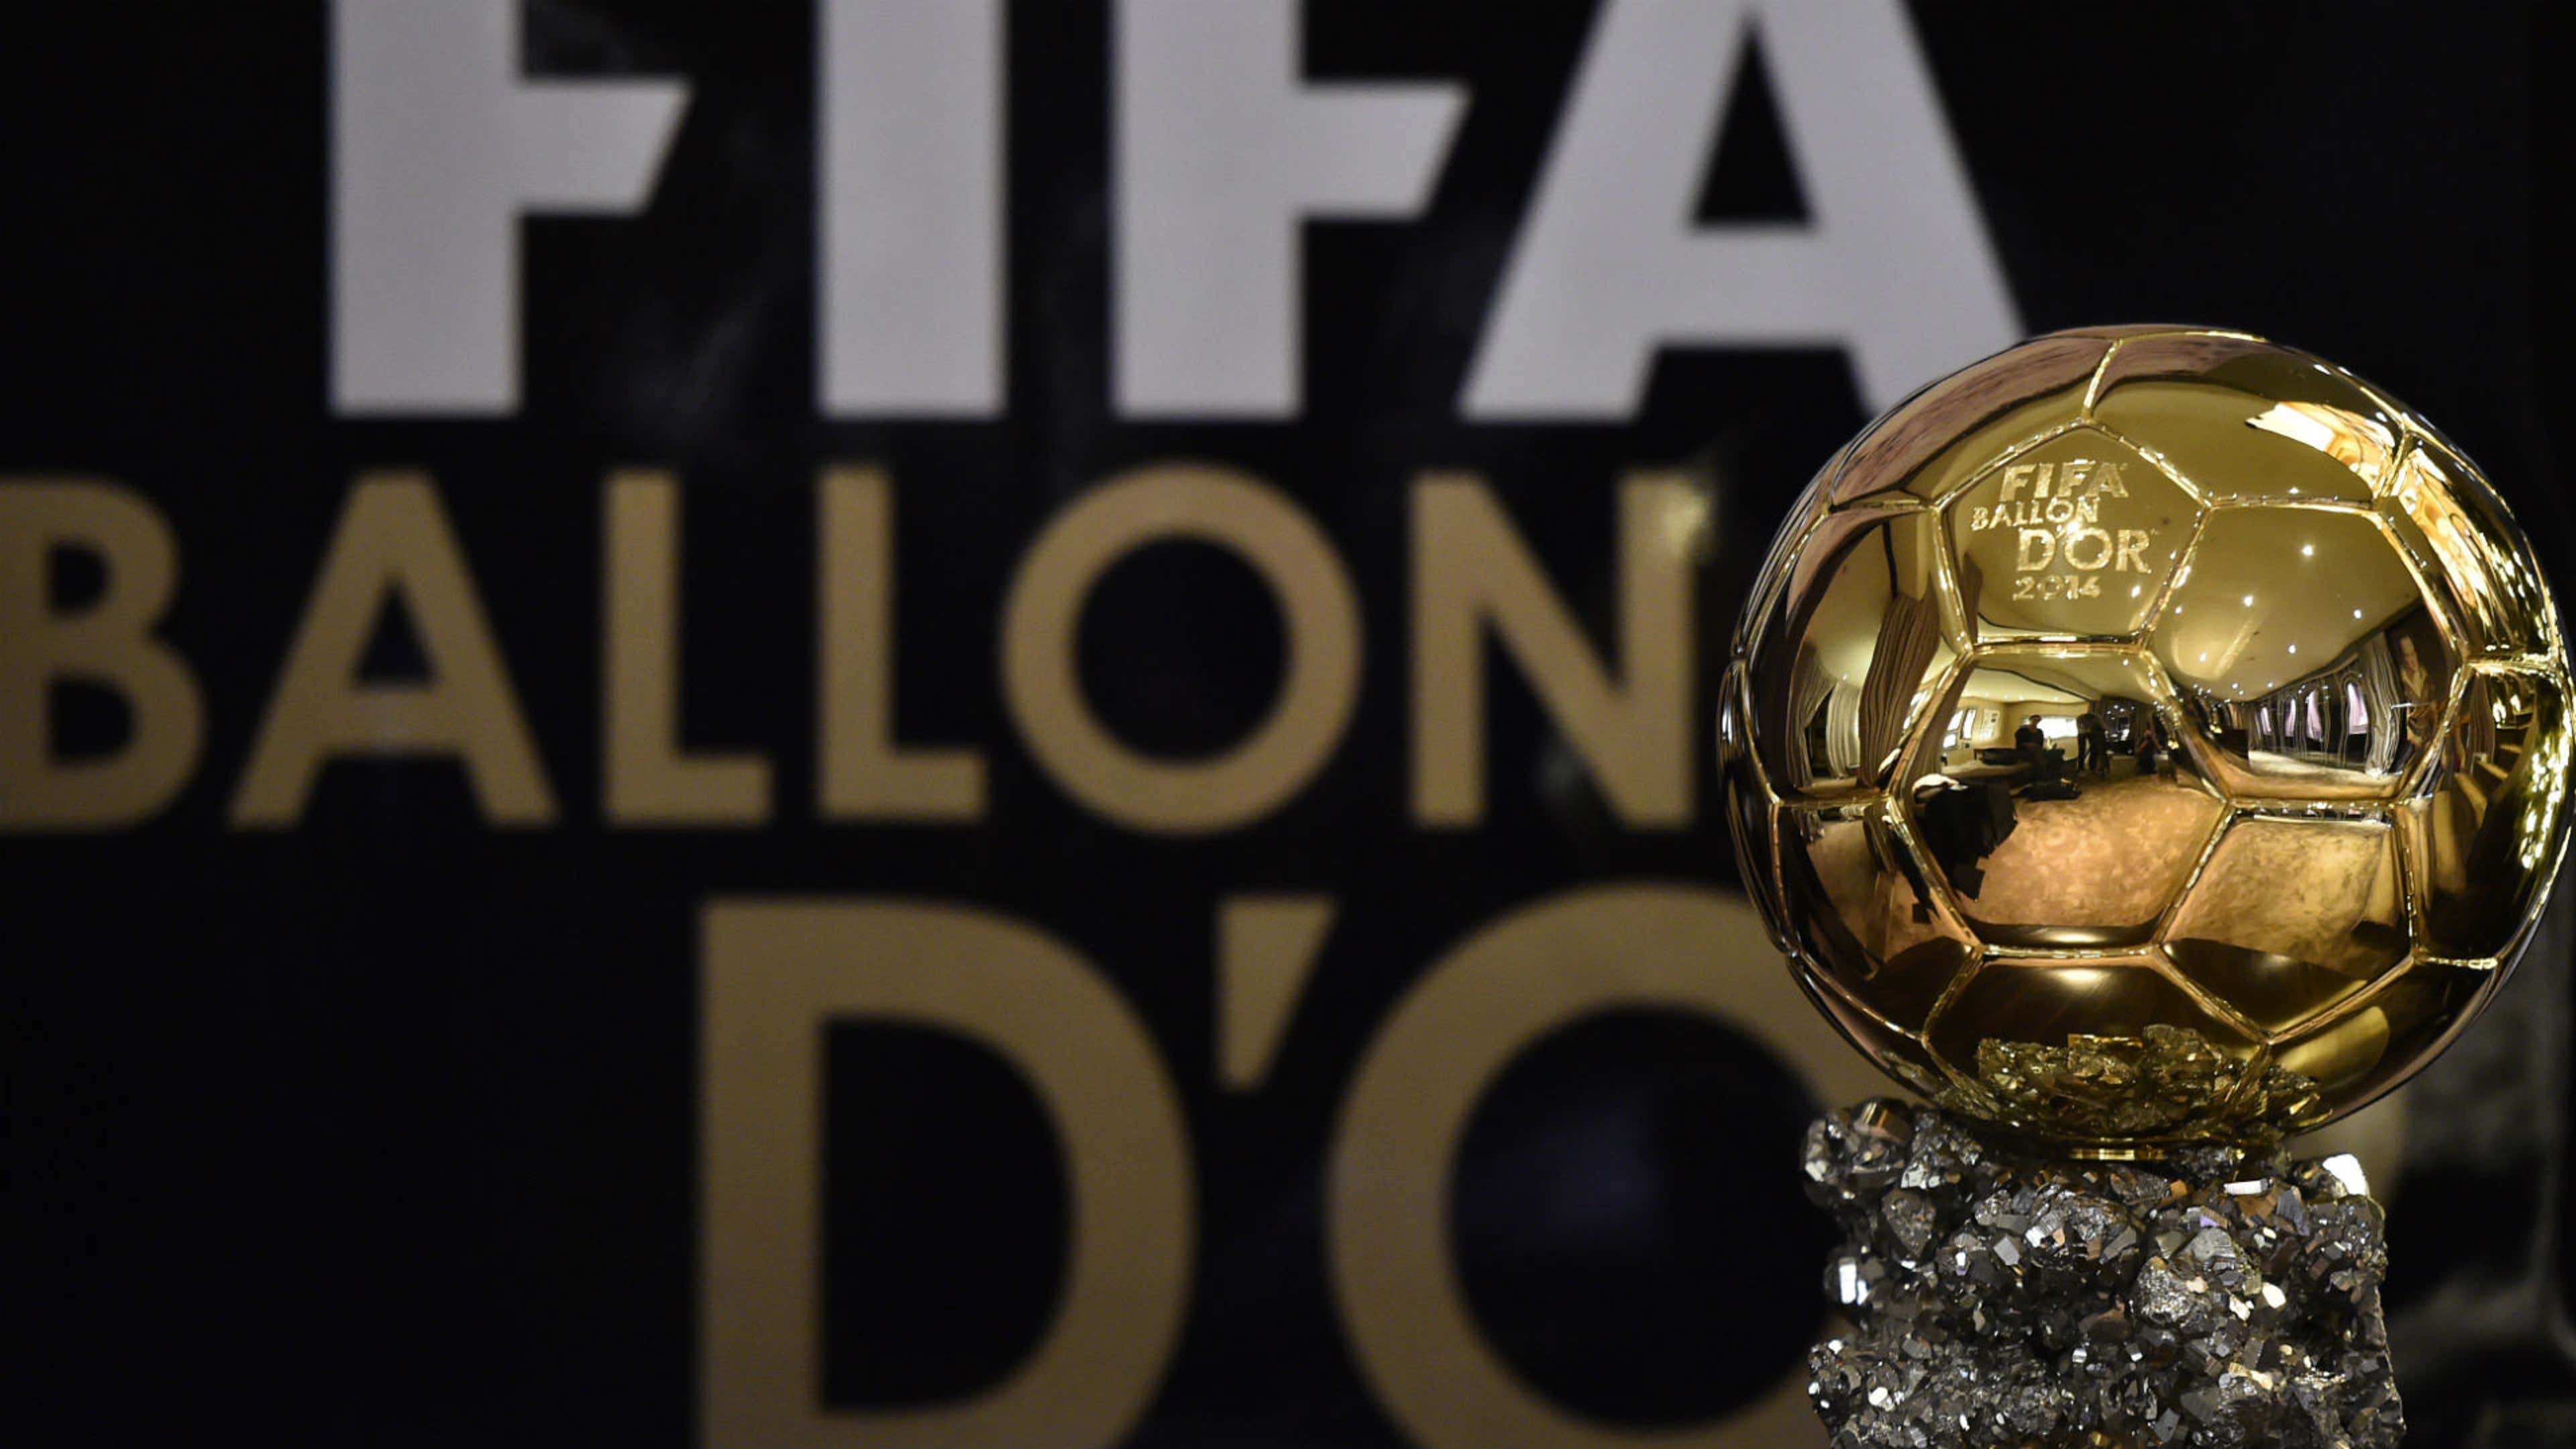 Bola de Ouro: veja os indicados para o prêmio em 2022